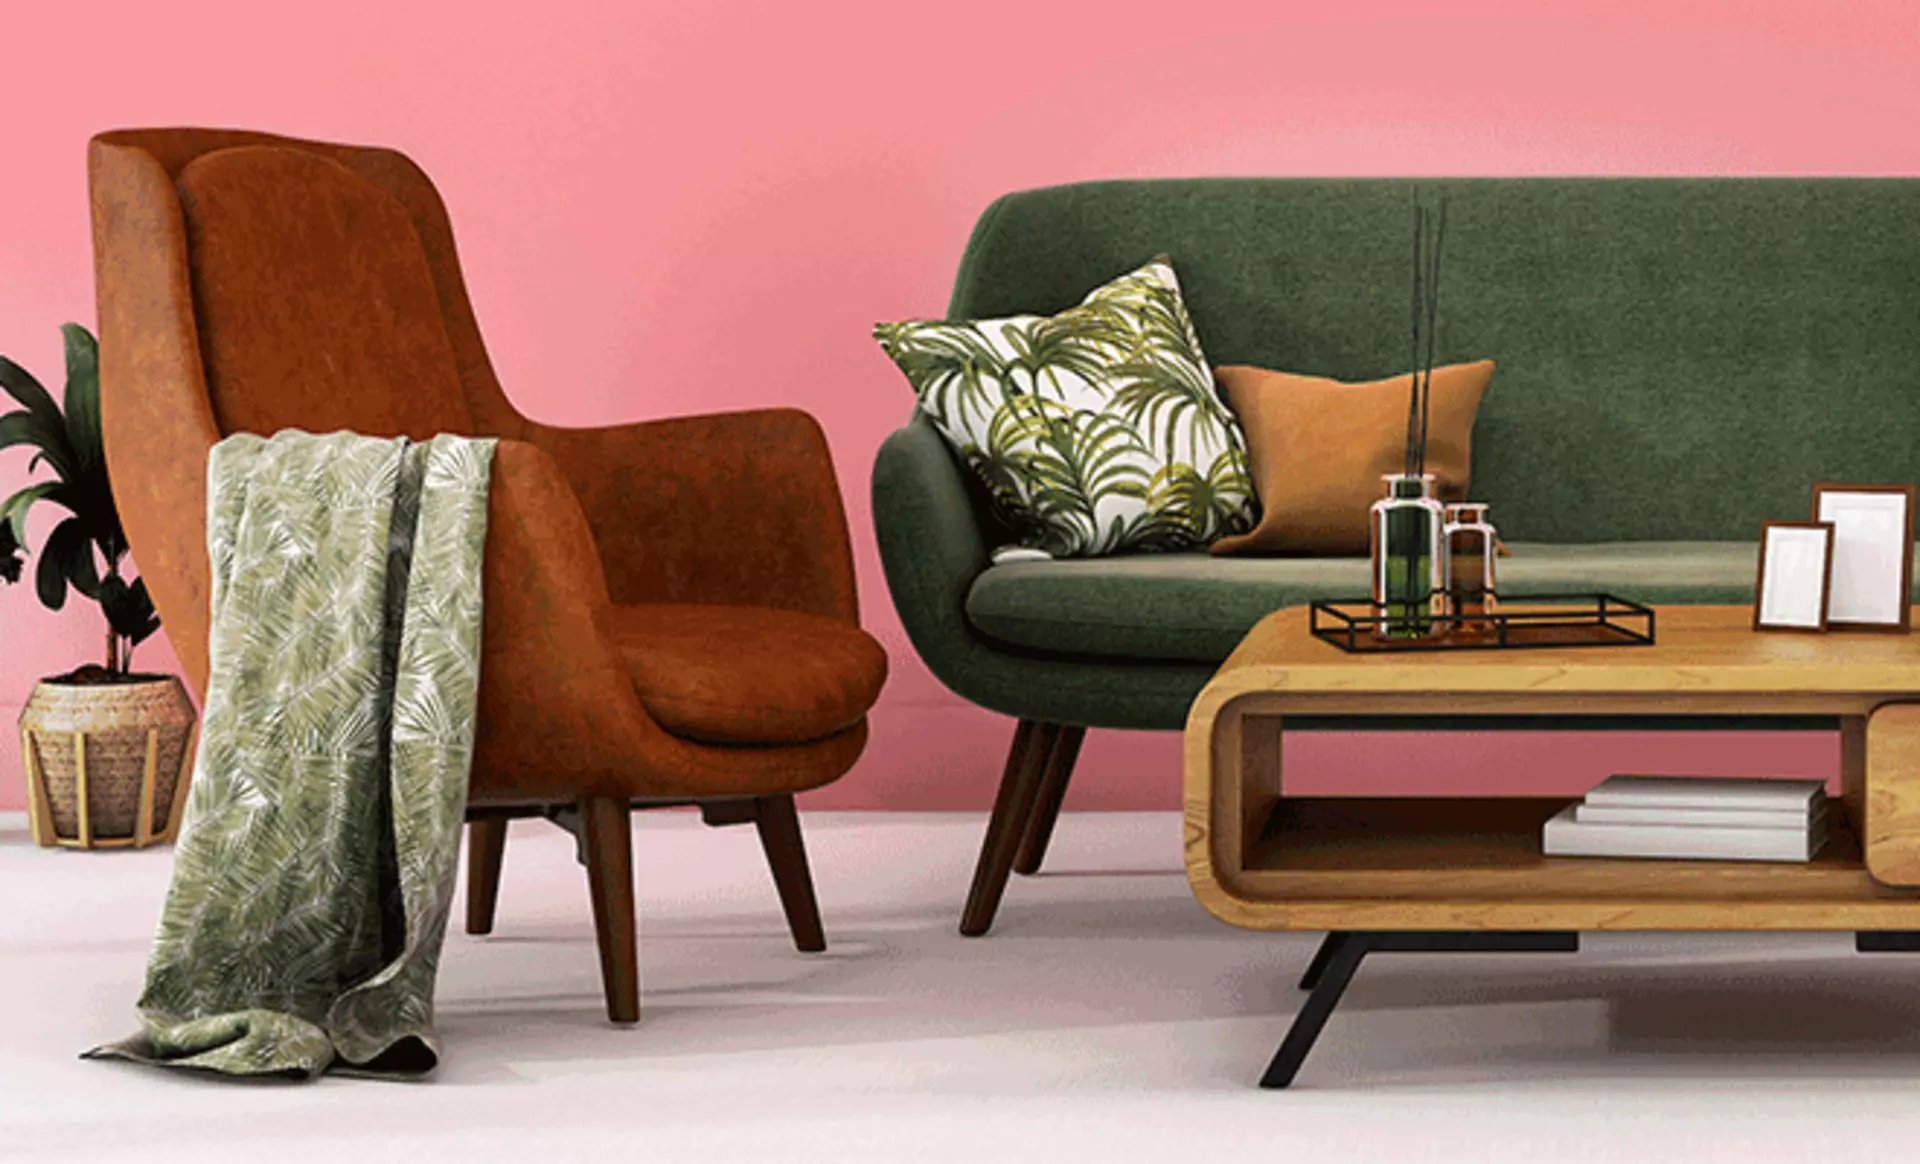 Inspirationsthema Vintage - Vintage Wohnzimmer mit passenden Wohnaccessoires im Used Look Jetzt bei Möbel Inhofer entdecken und inspirieren lassen!